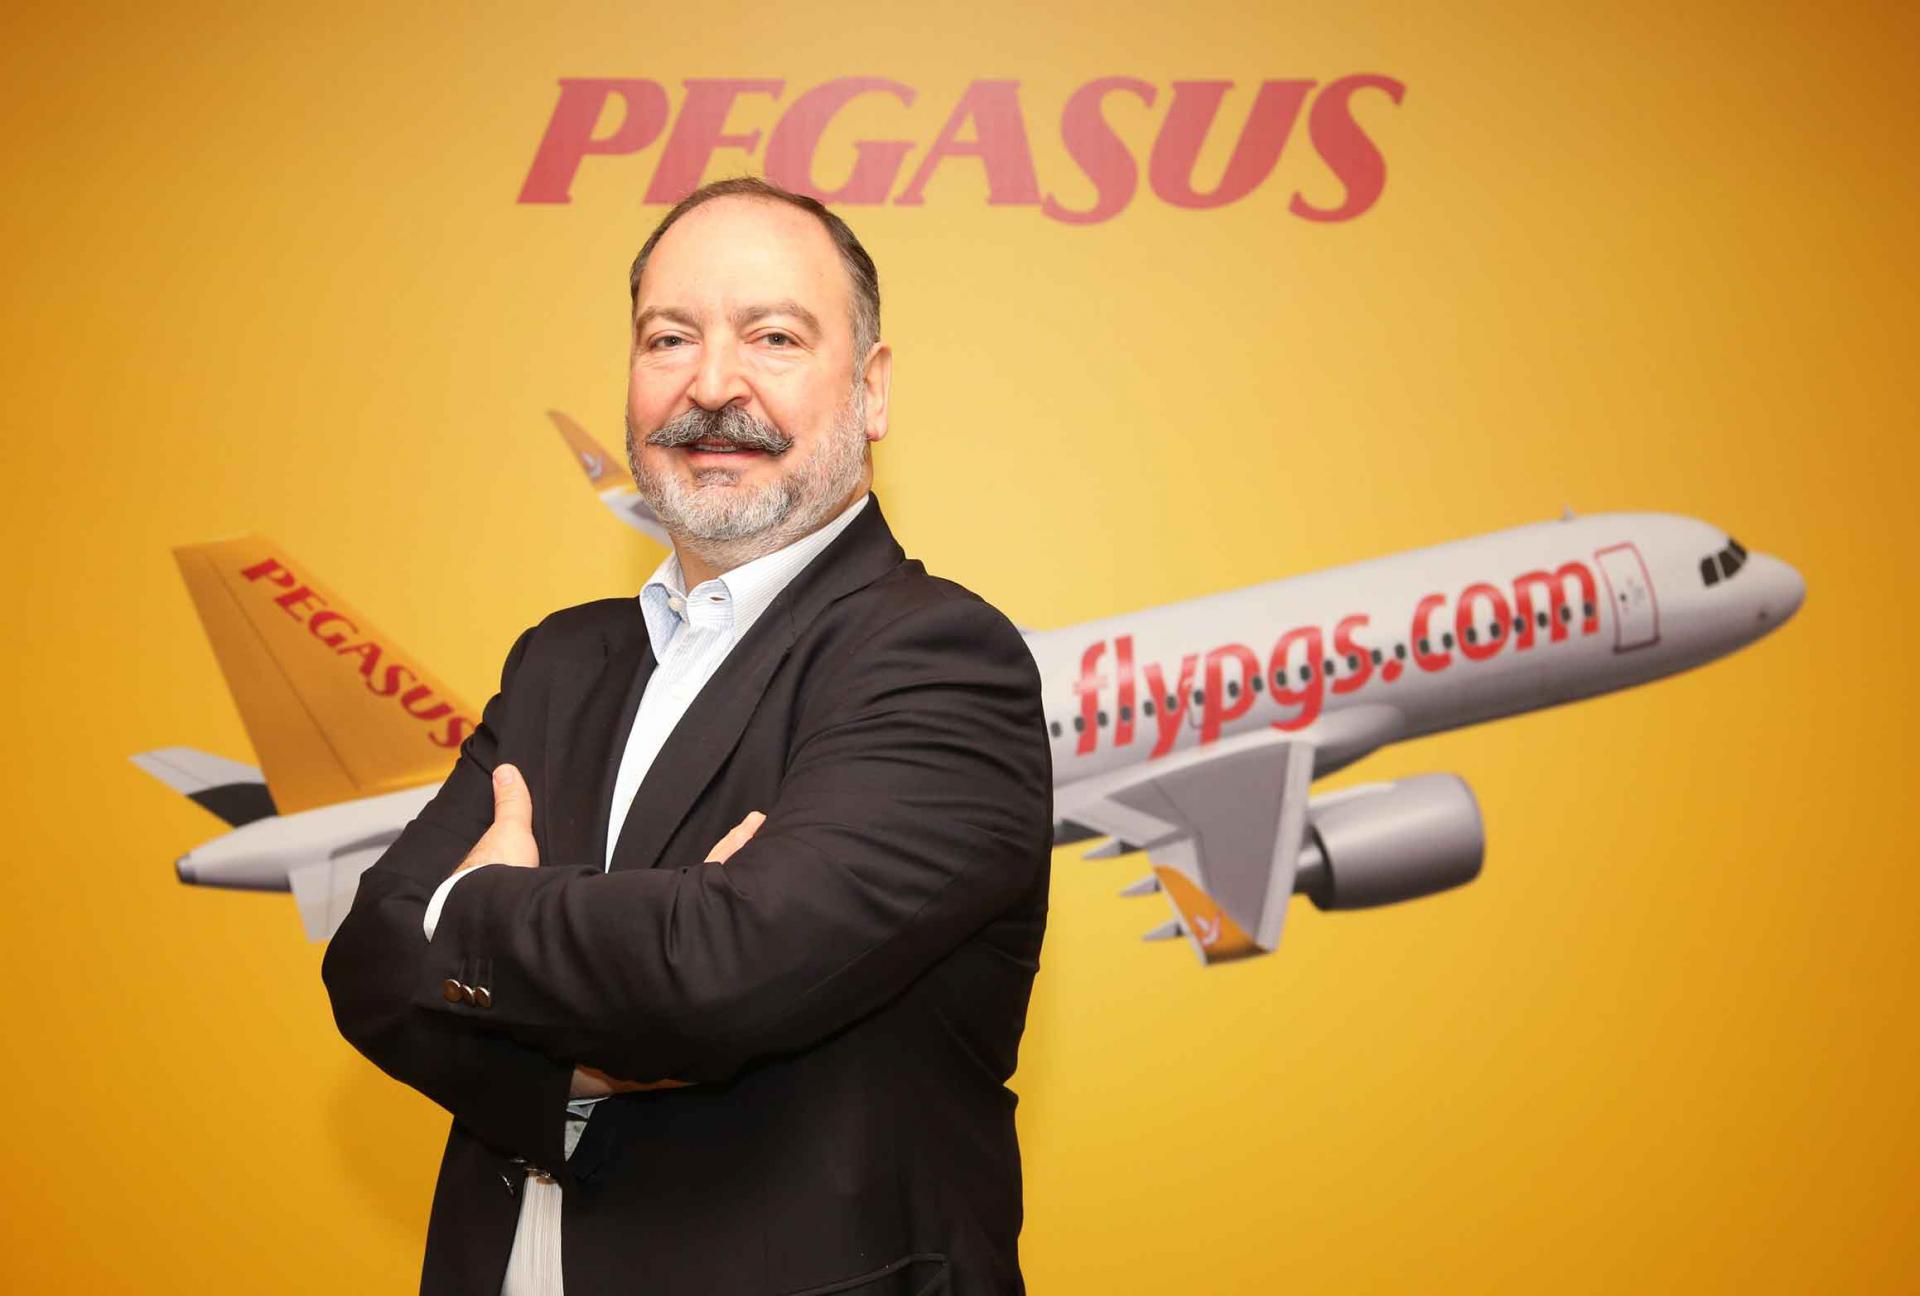 Pegasus Mehmet Nane